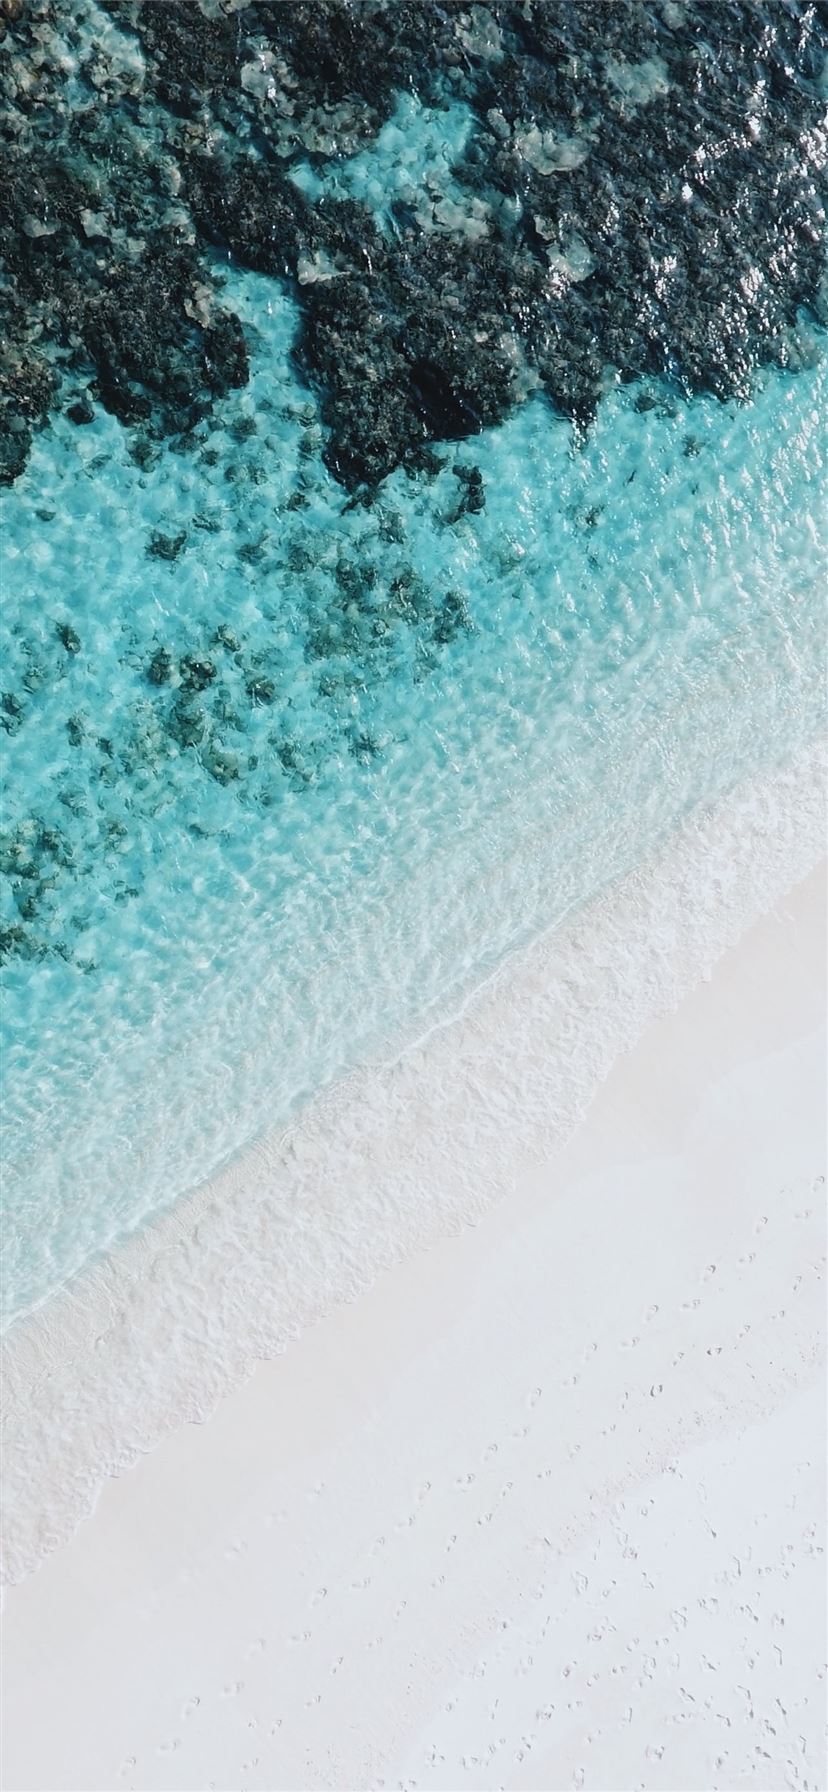 Hình nền iPhone biển là một cách tuyệt vời để cho điện thoại của bạn trở nên nổi bật và ấn tượng. Với những hình ảnh tuyệt đẹp của biển xanh ngắt và những bức tranh đầy màu sắc, bạn sẽ nhận ra rằng chúng thật sự là một tác phẩm nghệ thuật.